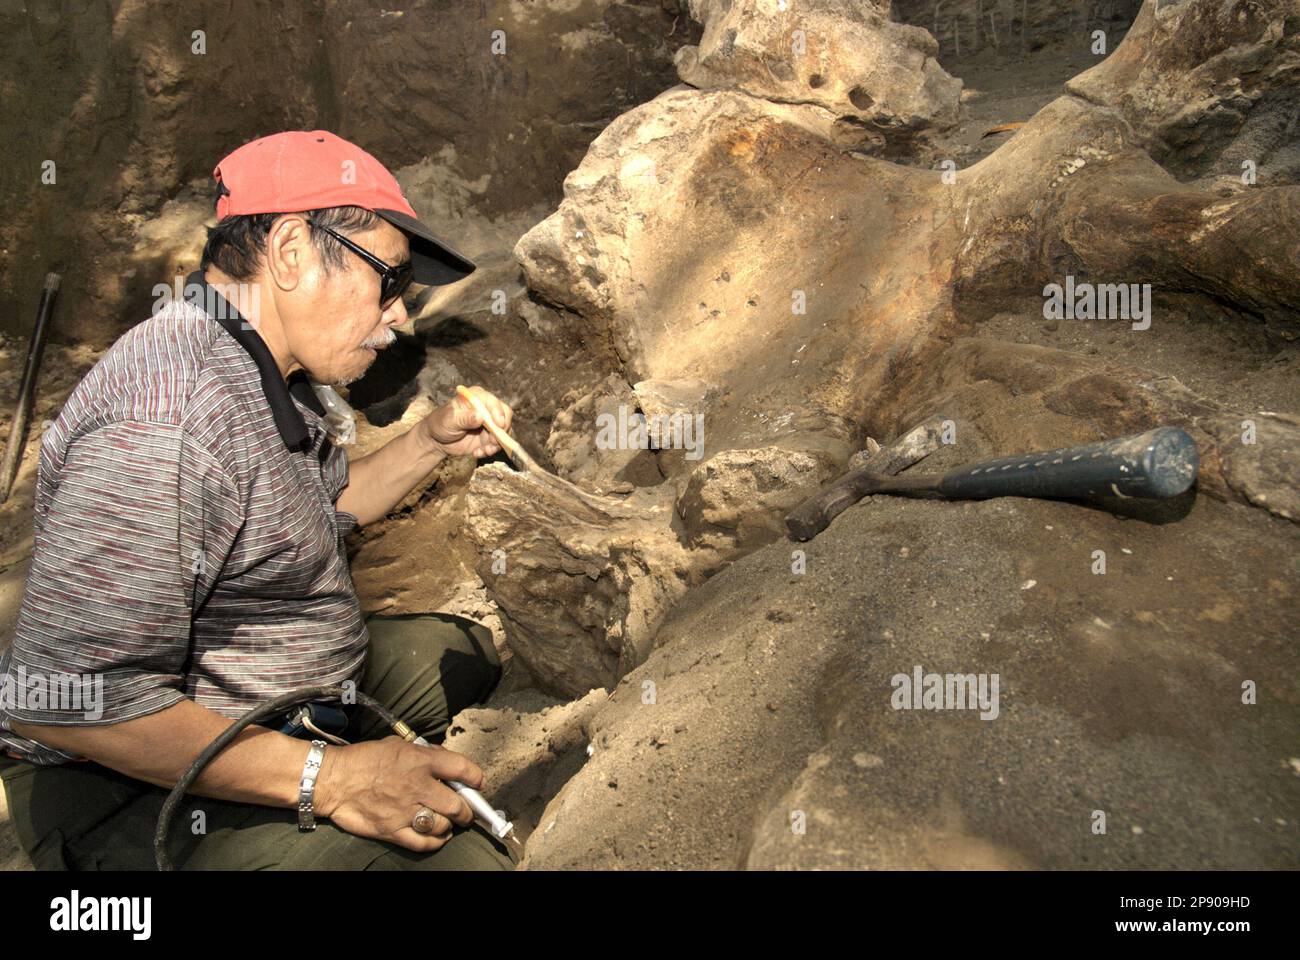 Fachroel Aziz, professeur de recherche en paléontologie des vertébrés, est photographié alors qu'il travaille sur le site d'excavation d'Elephas hysudrindicatus, une espèce d'éléphant disparue vécue pendant l'époque du Pléistocène, plus tard connue sous le nom de 'éléphant de Blora'—à Sunggun, Mendalem, Kradenan, Blora, Central Java, Indonésie. Au cours des fouilles, une équipe de scientifiques de la recherche sur les vertébrés (Agence géologique, Ministère indonésien de l'énergie et des ressources minérales), dirigée par les paléontologues Iwan Kurniawan et Fachroel Aziz, a découvert les os de l'espèce presque entièrement (environ 90 pour cent) qui plus tard... Banque D'Images